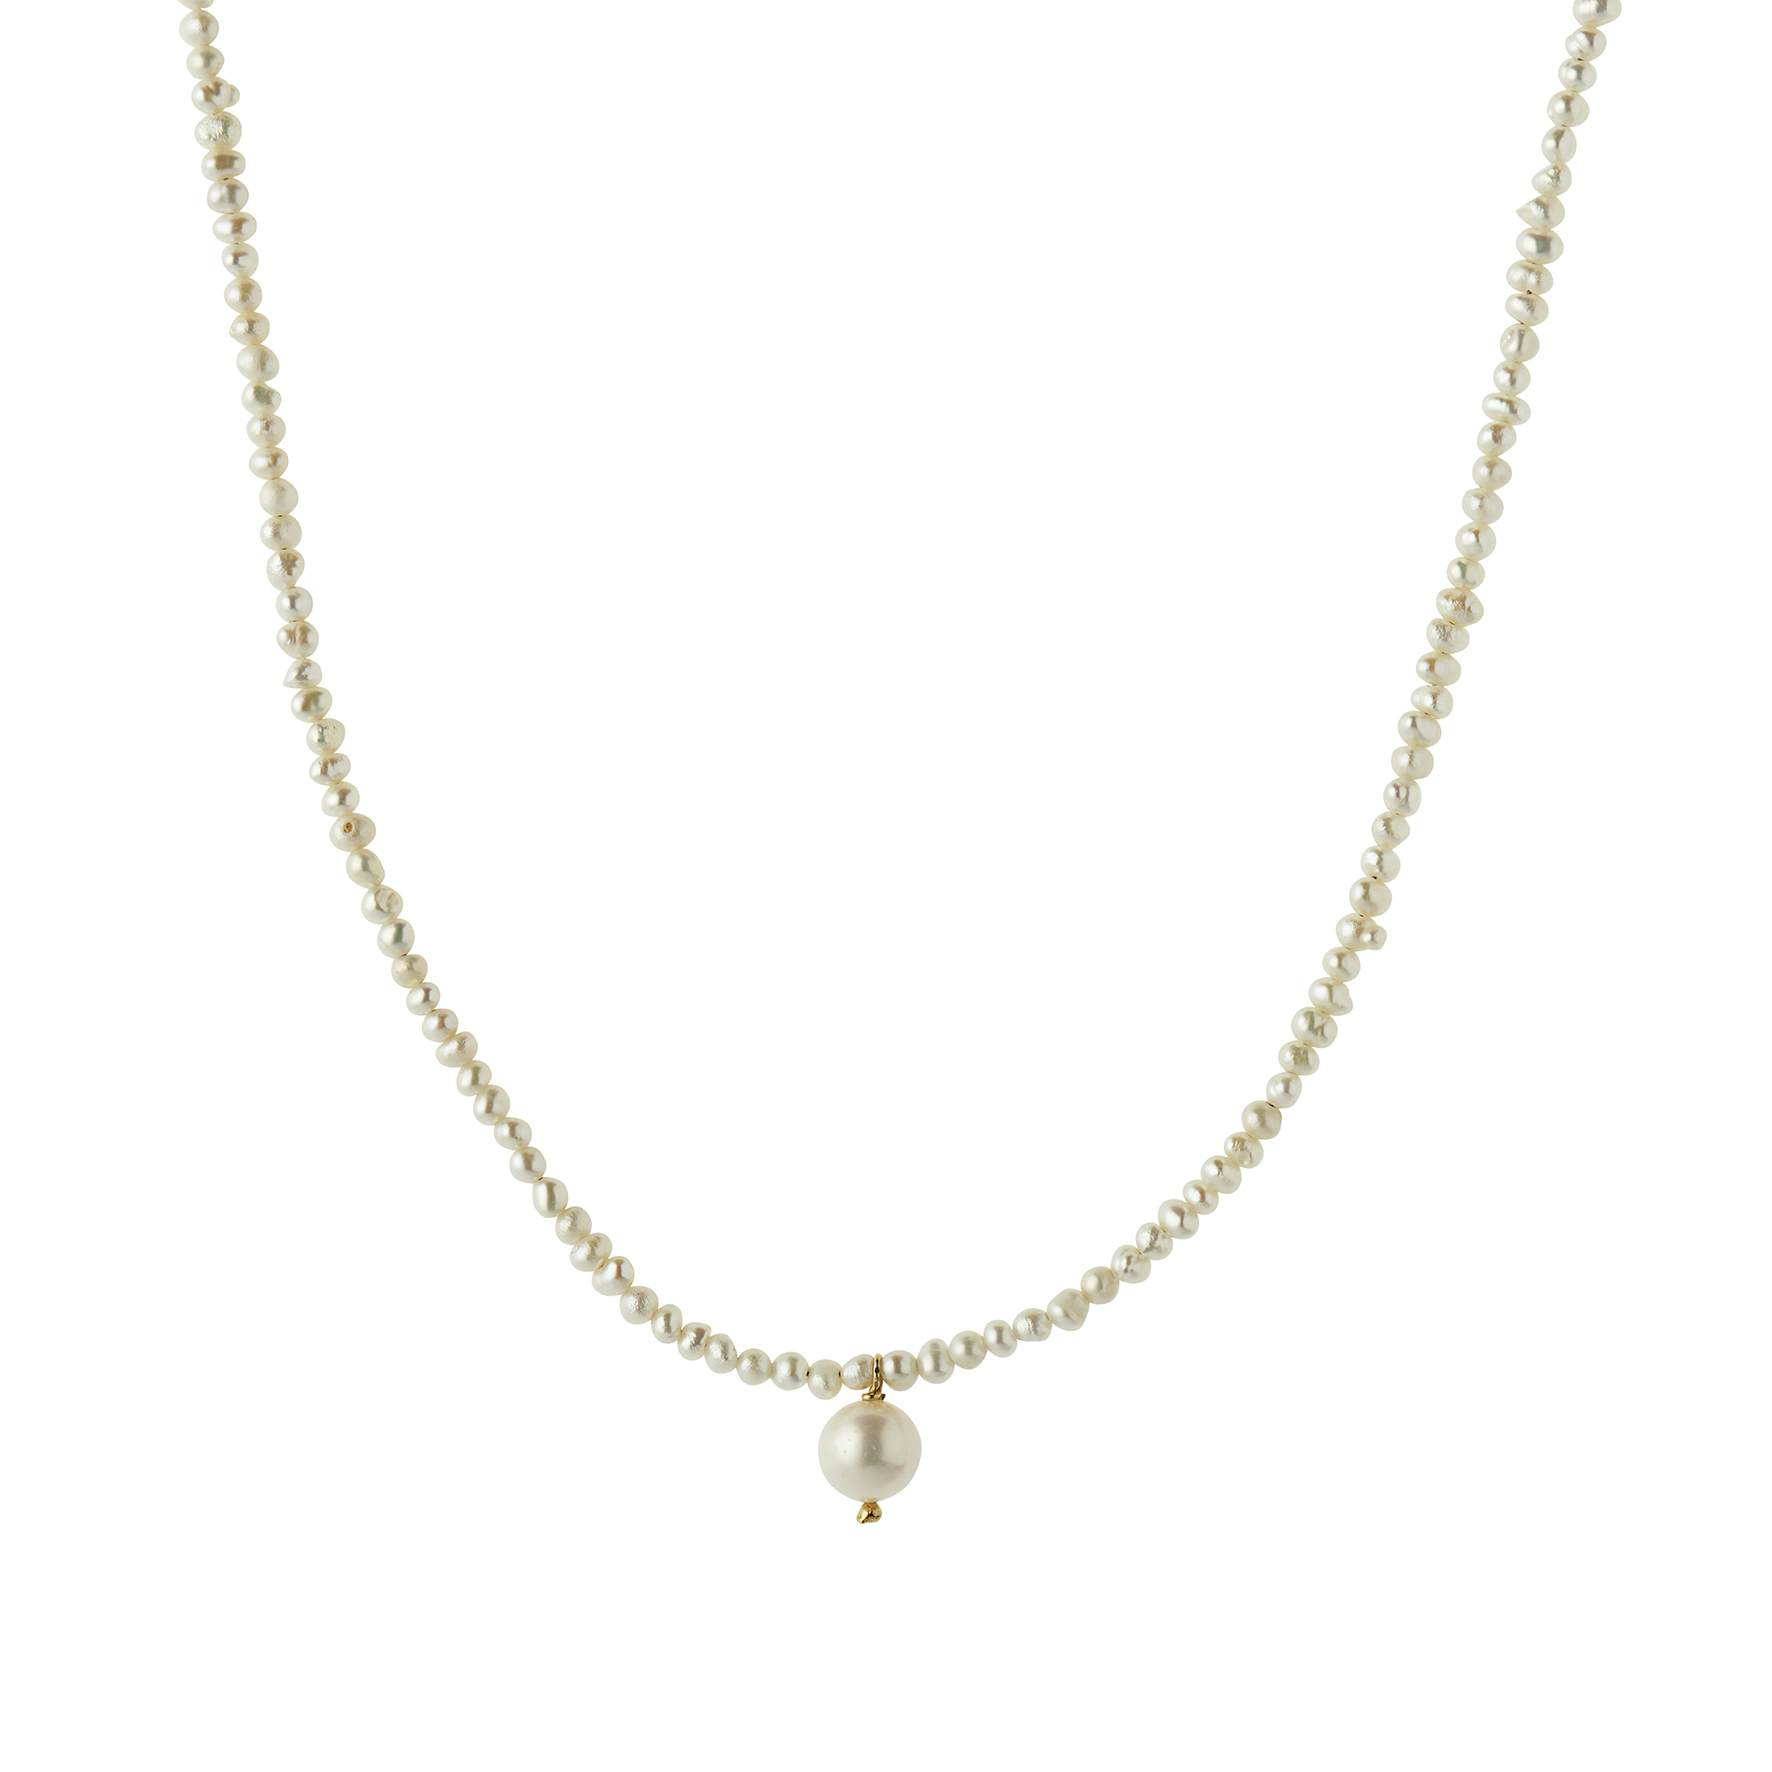 Heavenly Pearl Dream Necklace Classy fra STINE A Jewelry i Forgyldt-Sølv Sterling 925